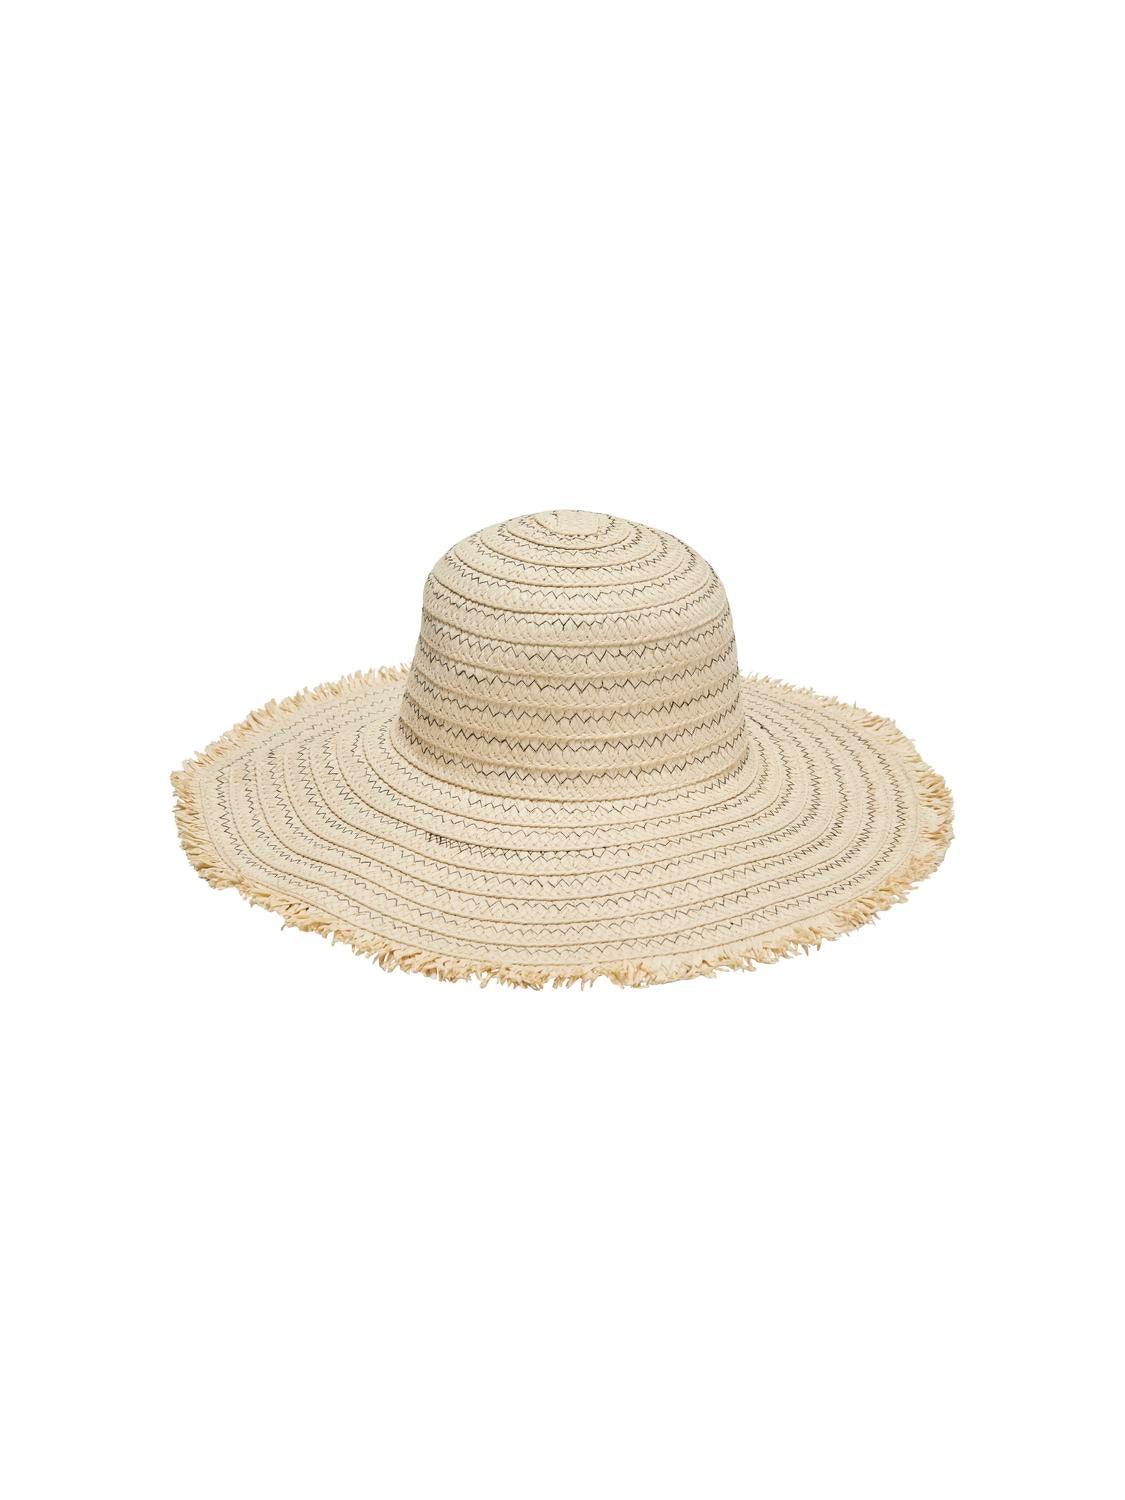 ONLY Hat -Pale Khaki - 15313312